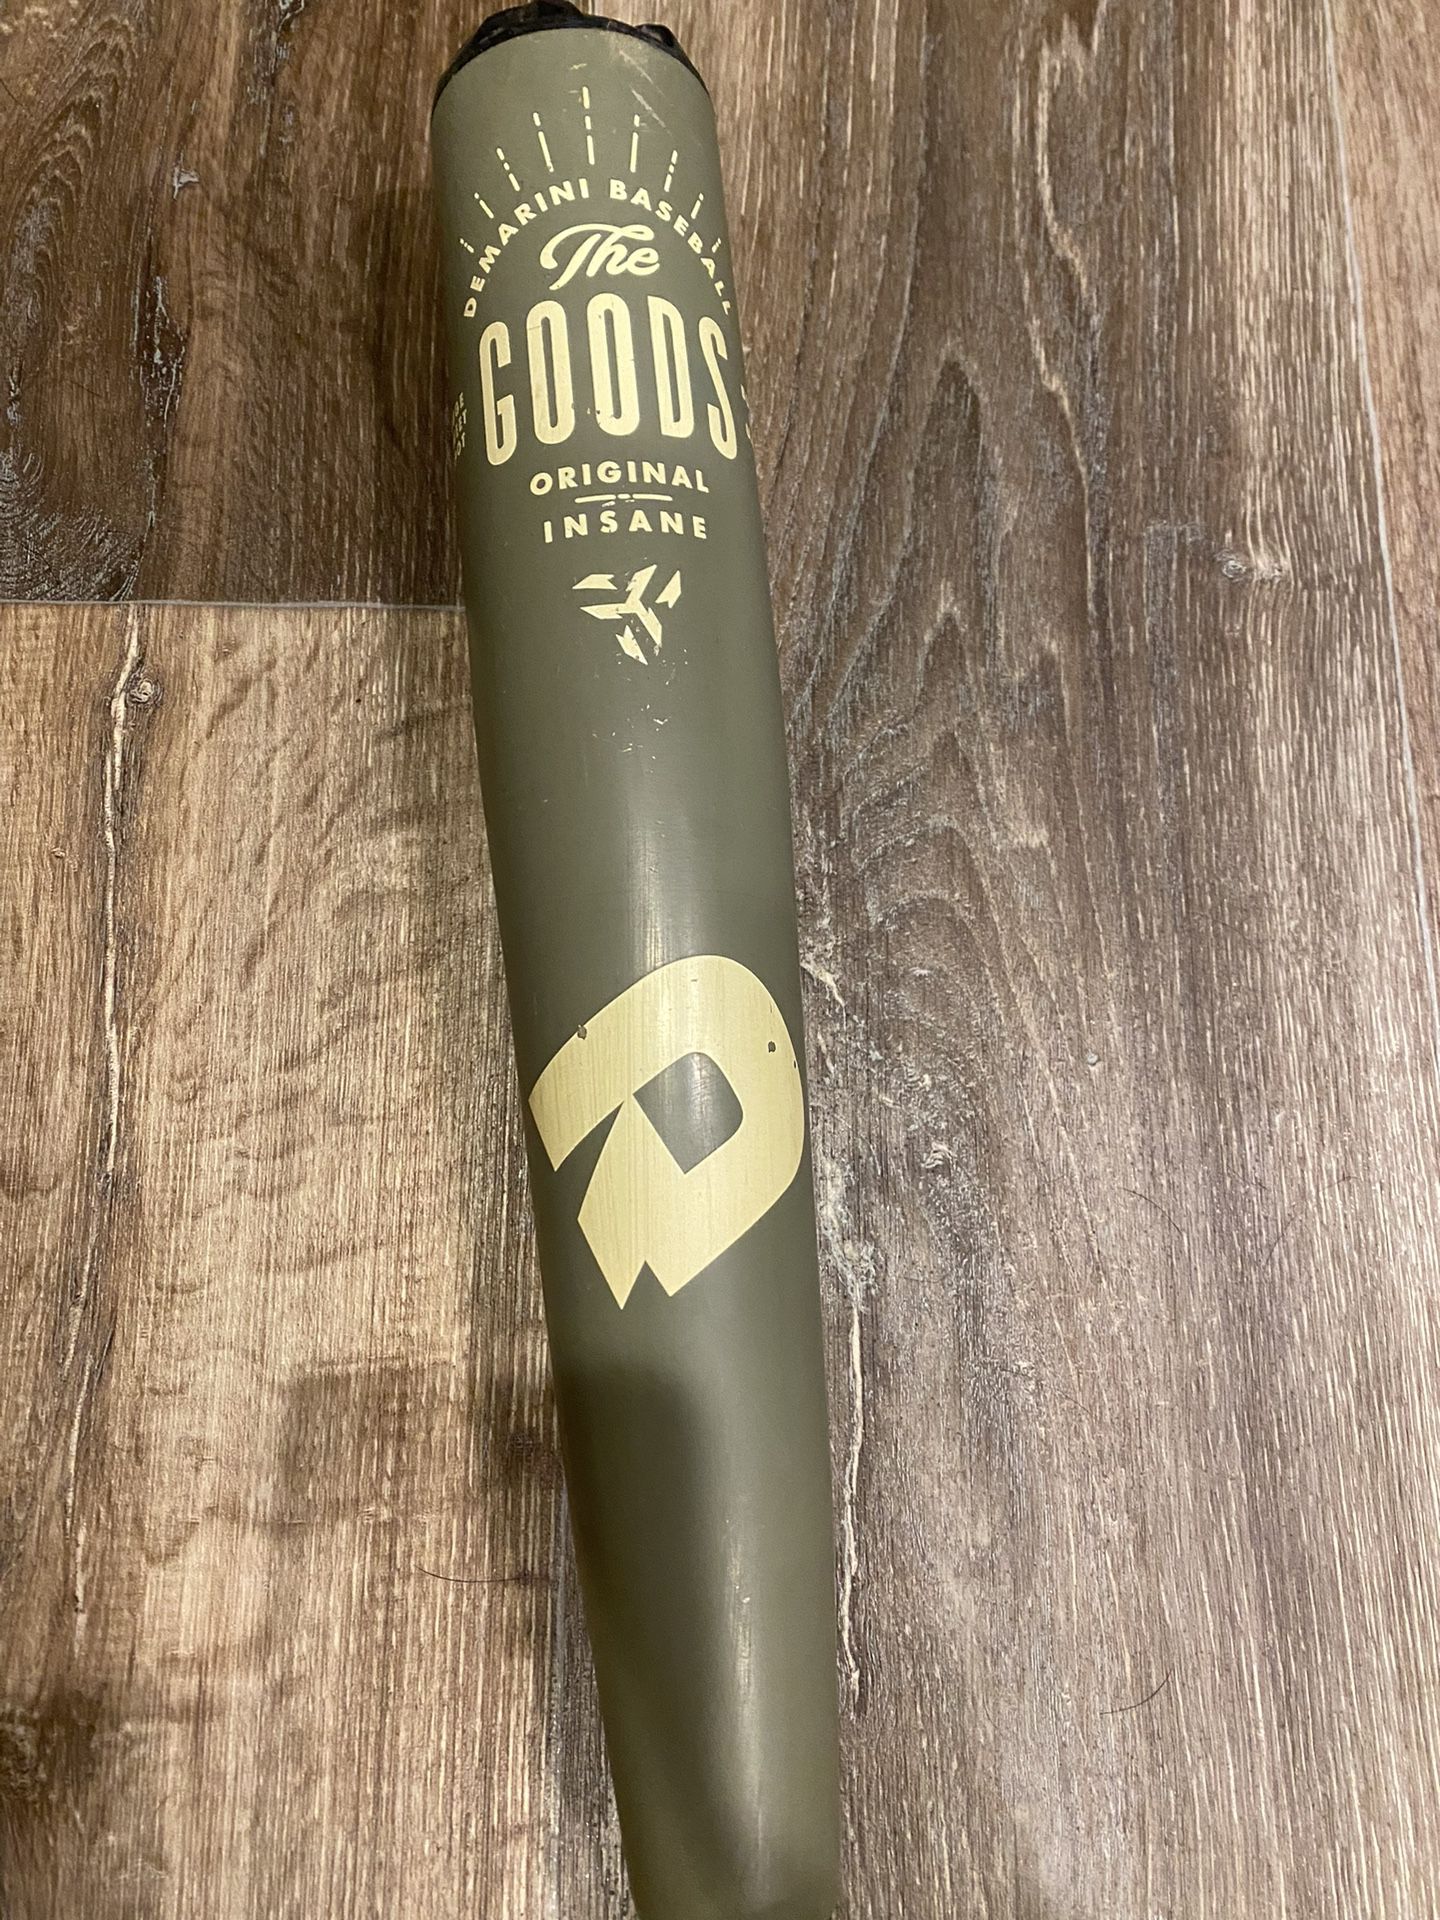 2021 BBCOR Demarini “The Goods” Baseball Bat. 32/29